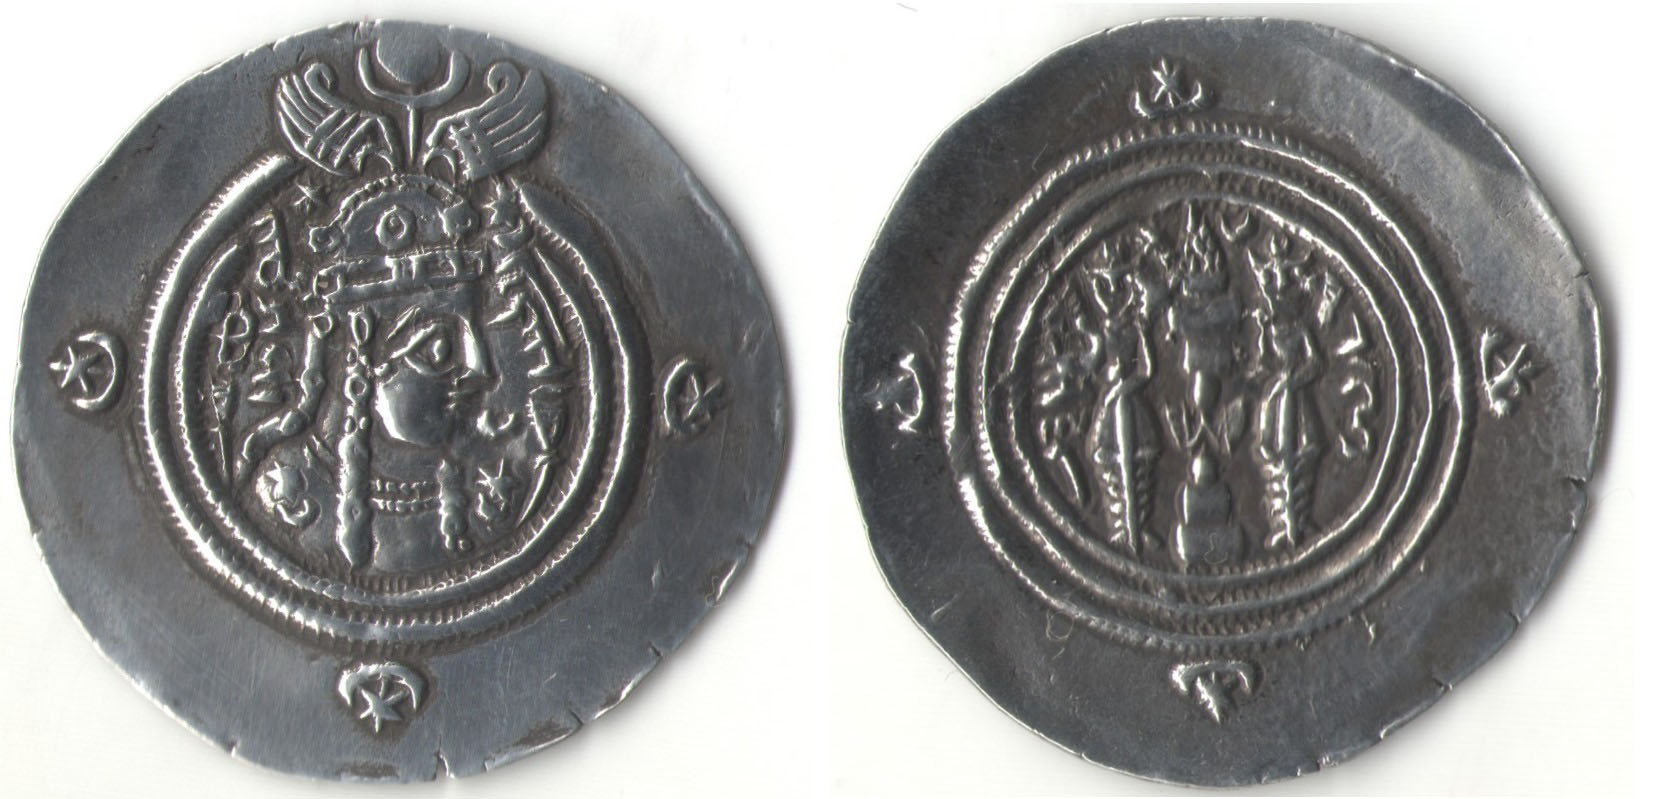 Представляем первые серебряные монеты, отчеканенные в Нахчыване